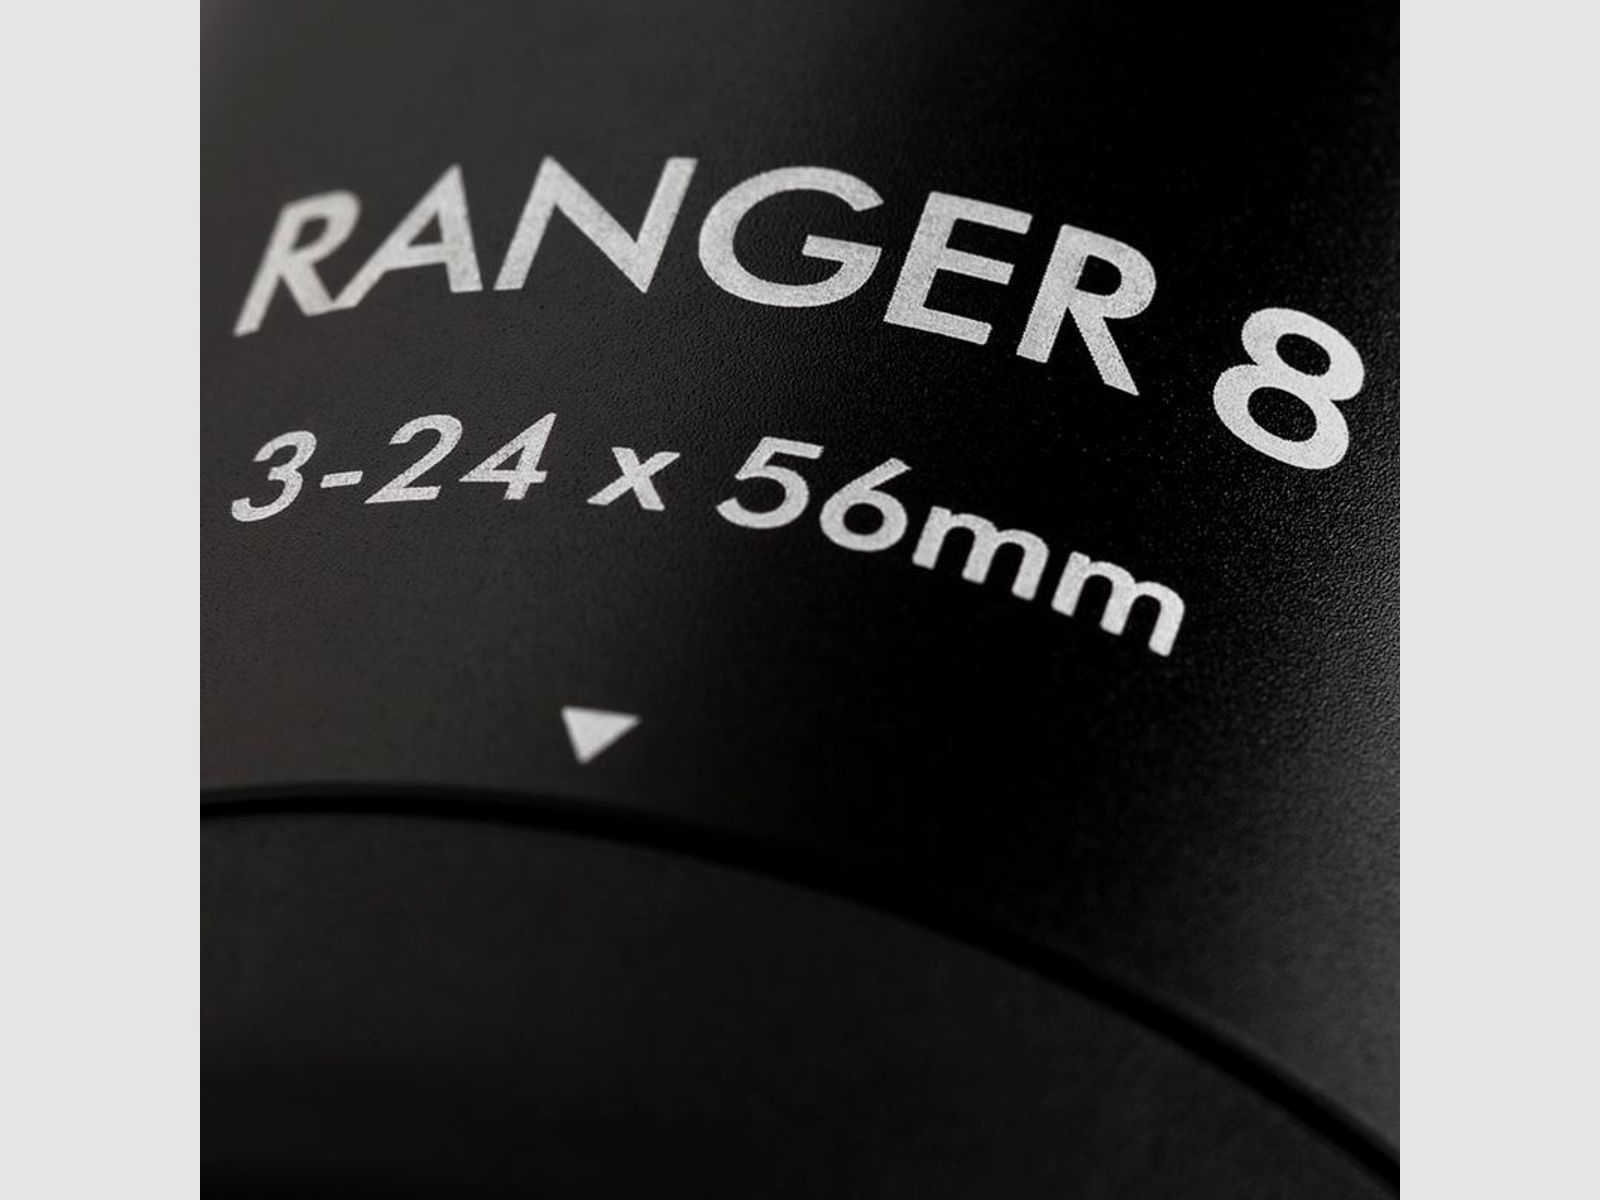 Steiner 202287830 Ranger 8 3-24x56 mit Absehen LA-4A-I 2. Bildebene